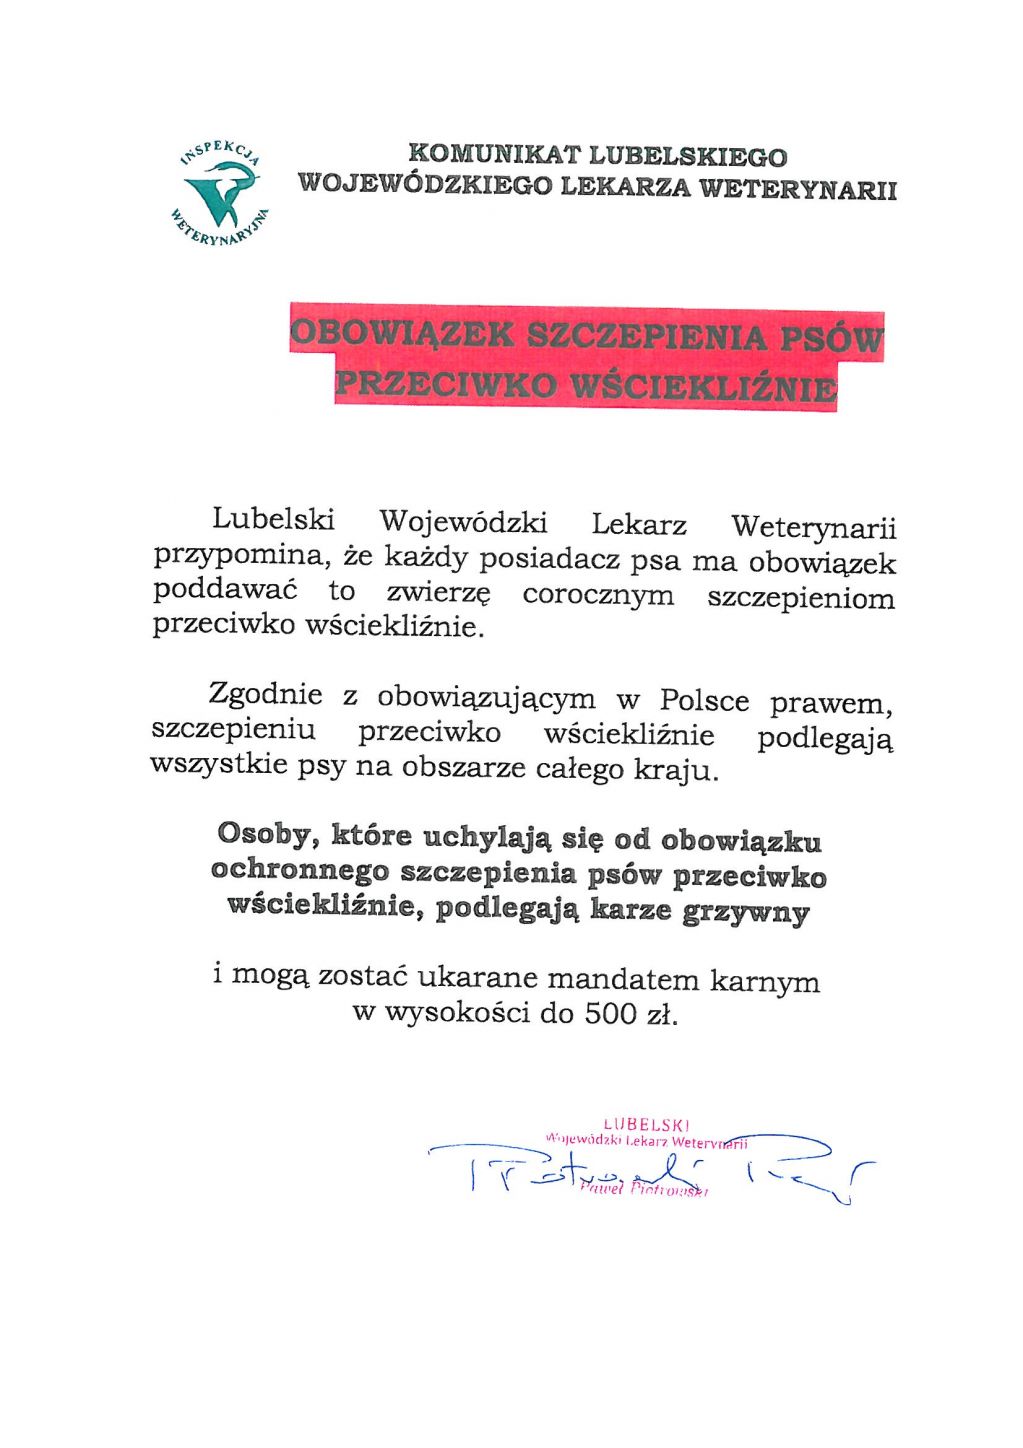 Komunikat lubelskiego Wojewódzkiego Lekarza Weterynari w sprawie szczepienia psów. - zdjęcie